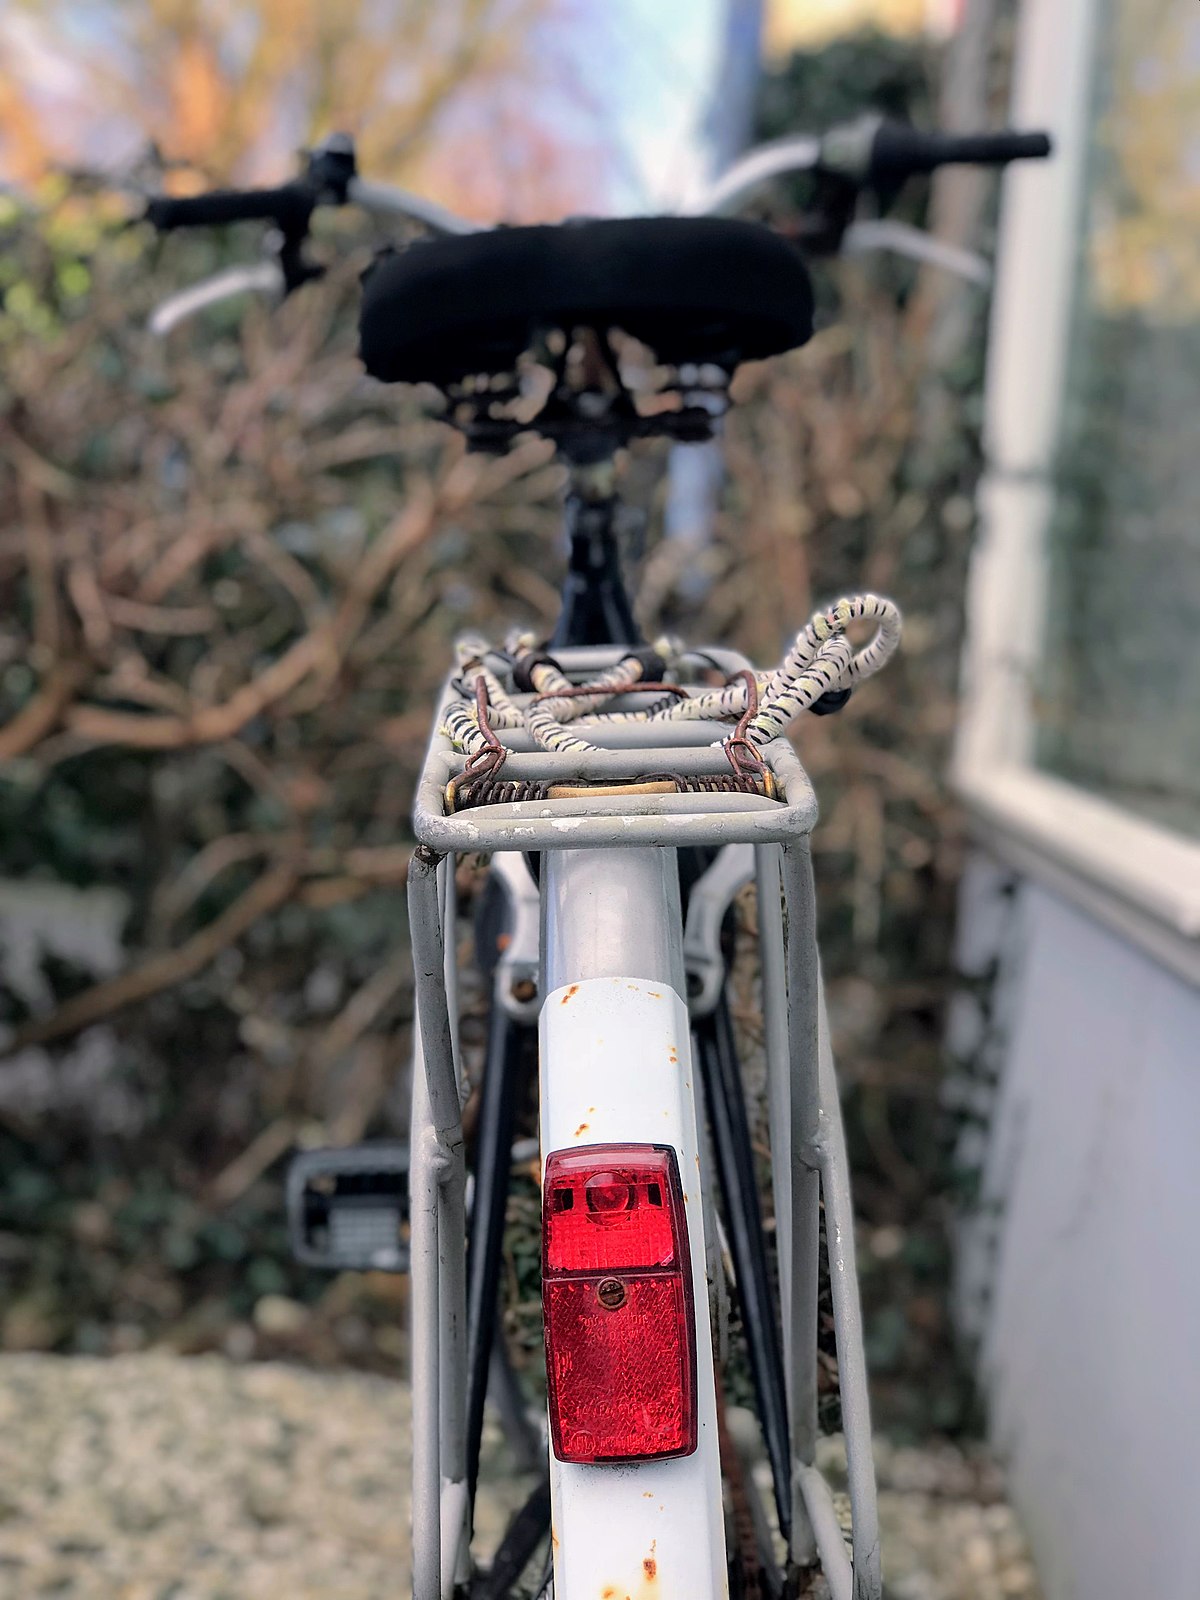 Genoptag Taktil sans maling Bicycle lighting - Wikipedia